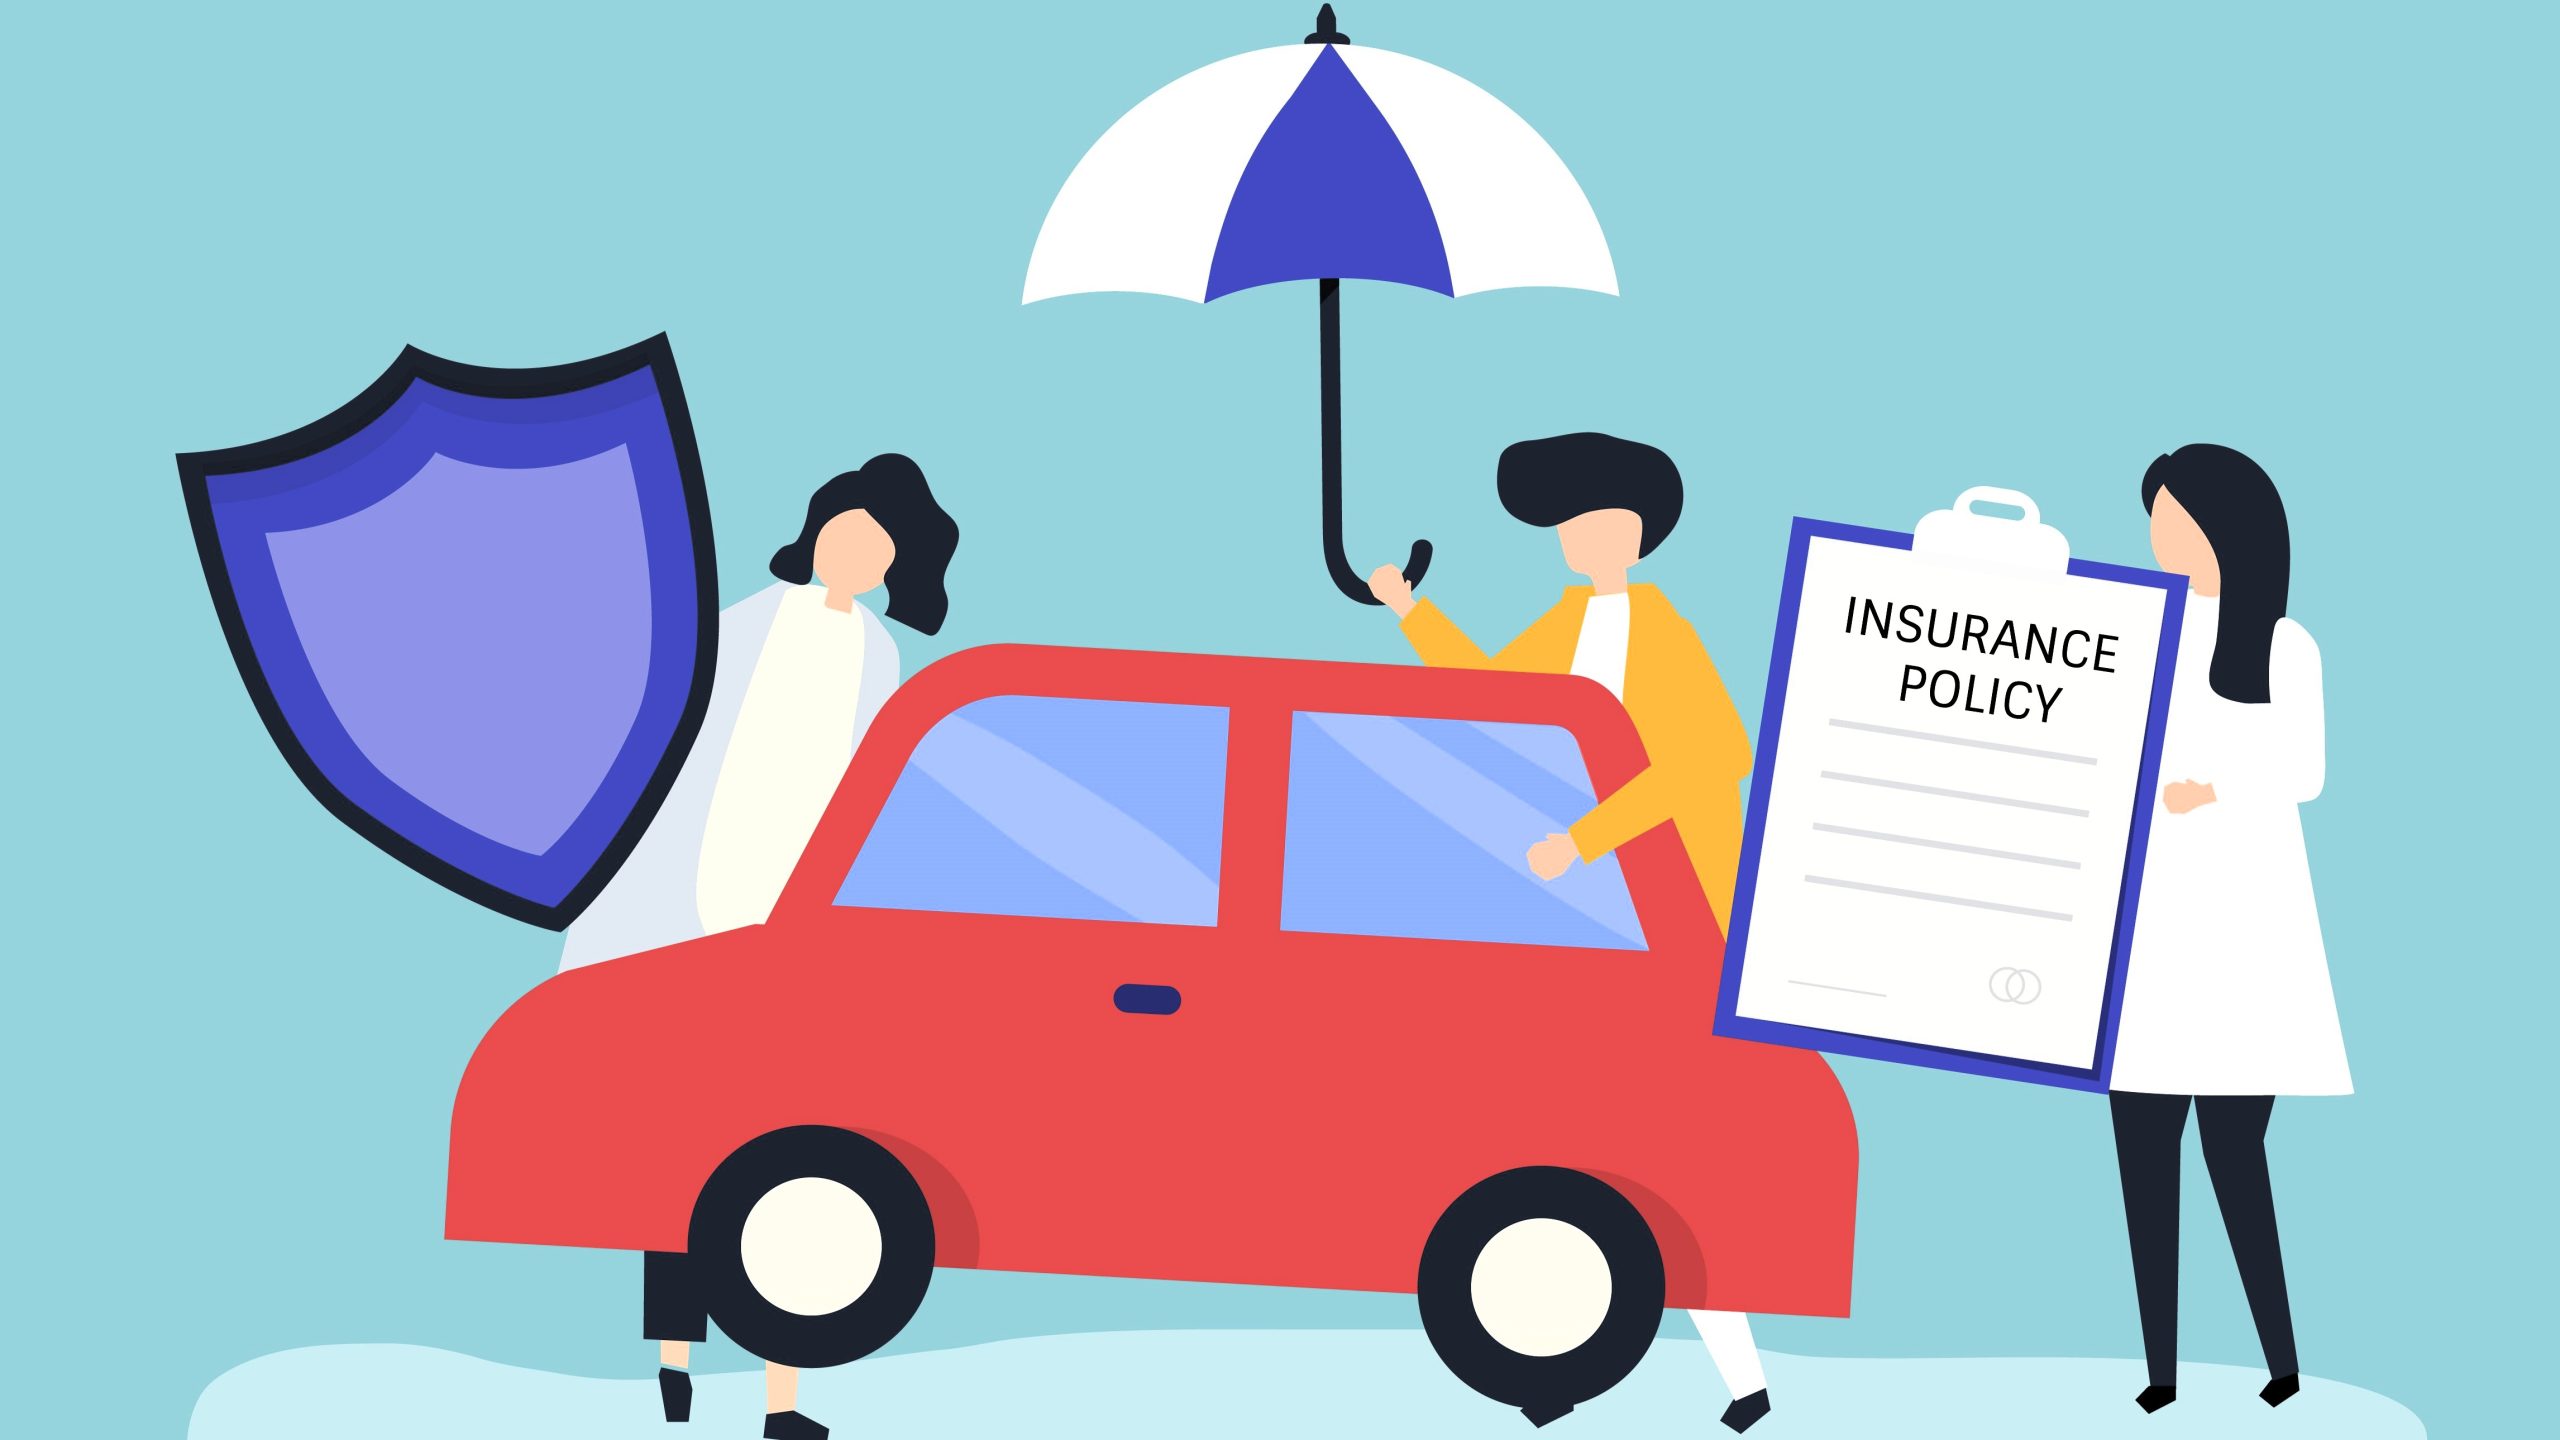 Seguro de auto fuera del estado: ¿Cambia la cobertura de póliza?